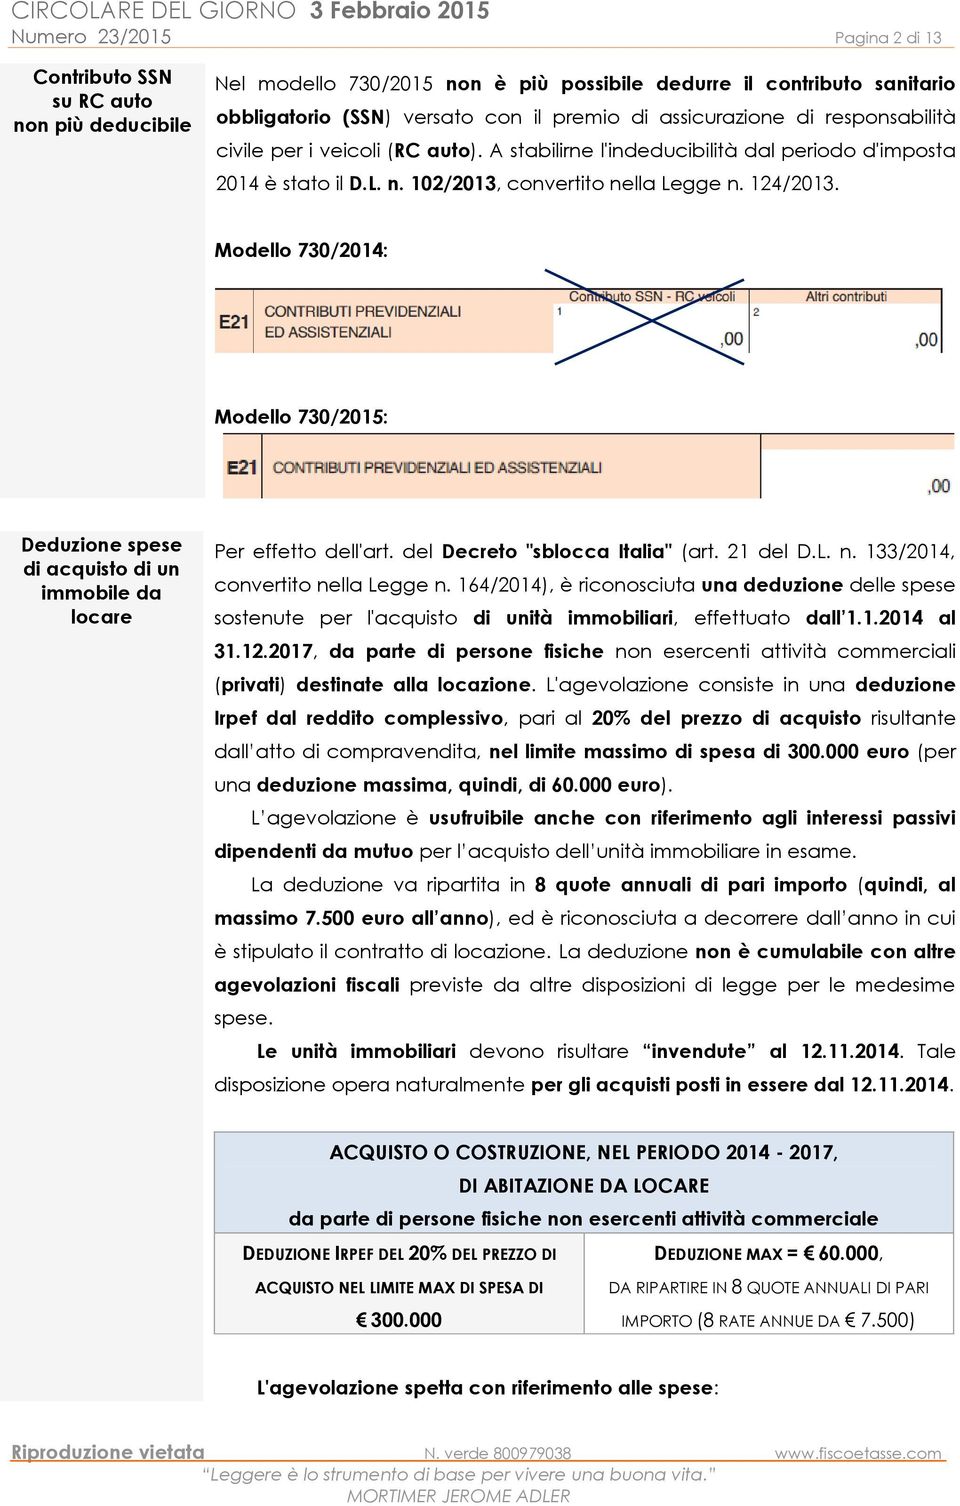 Modello 730/2014: Modello 730/2015: Deduzione spese di acquisto di un immobile da locare Per effetto dell'art. del Decreto "sblocca Italia" (art. 21 del D.L. n. 133/2014, convertito nella Legge n.